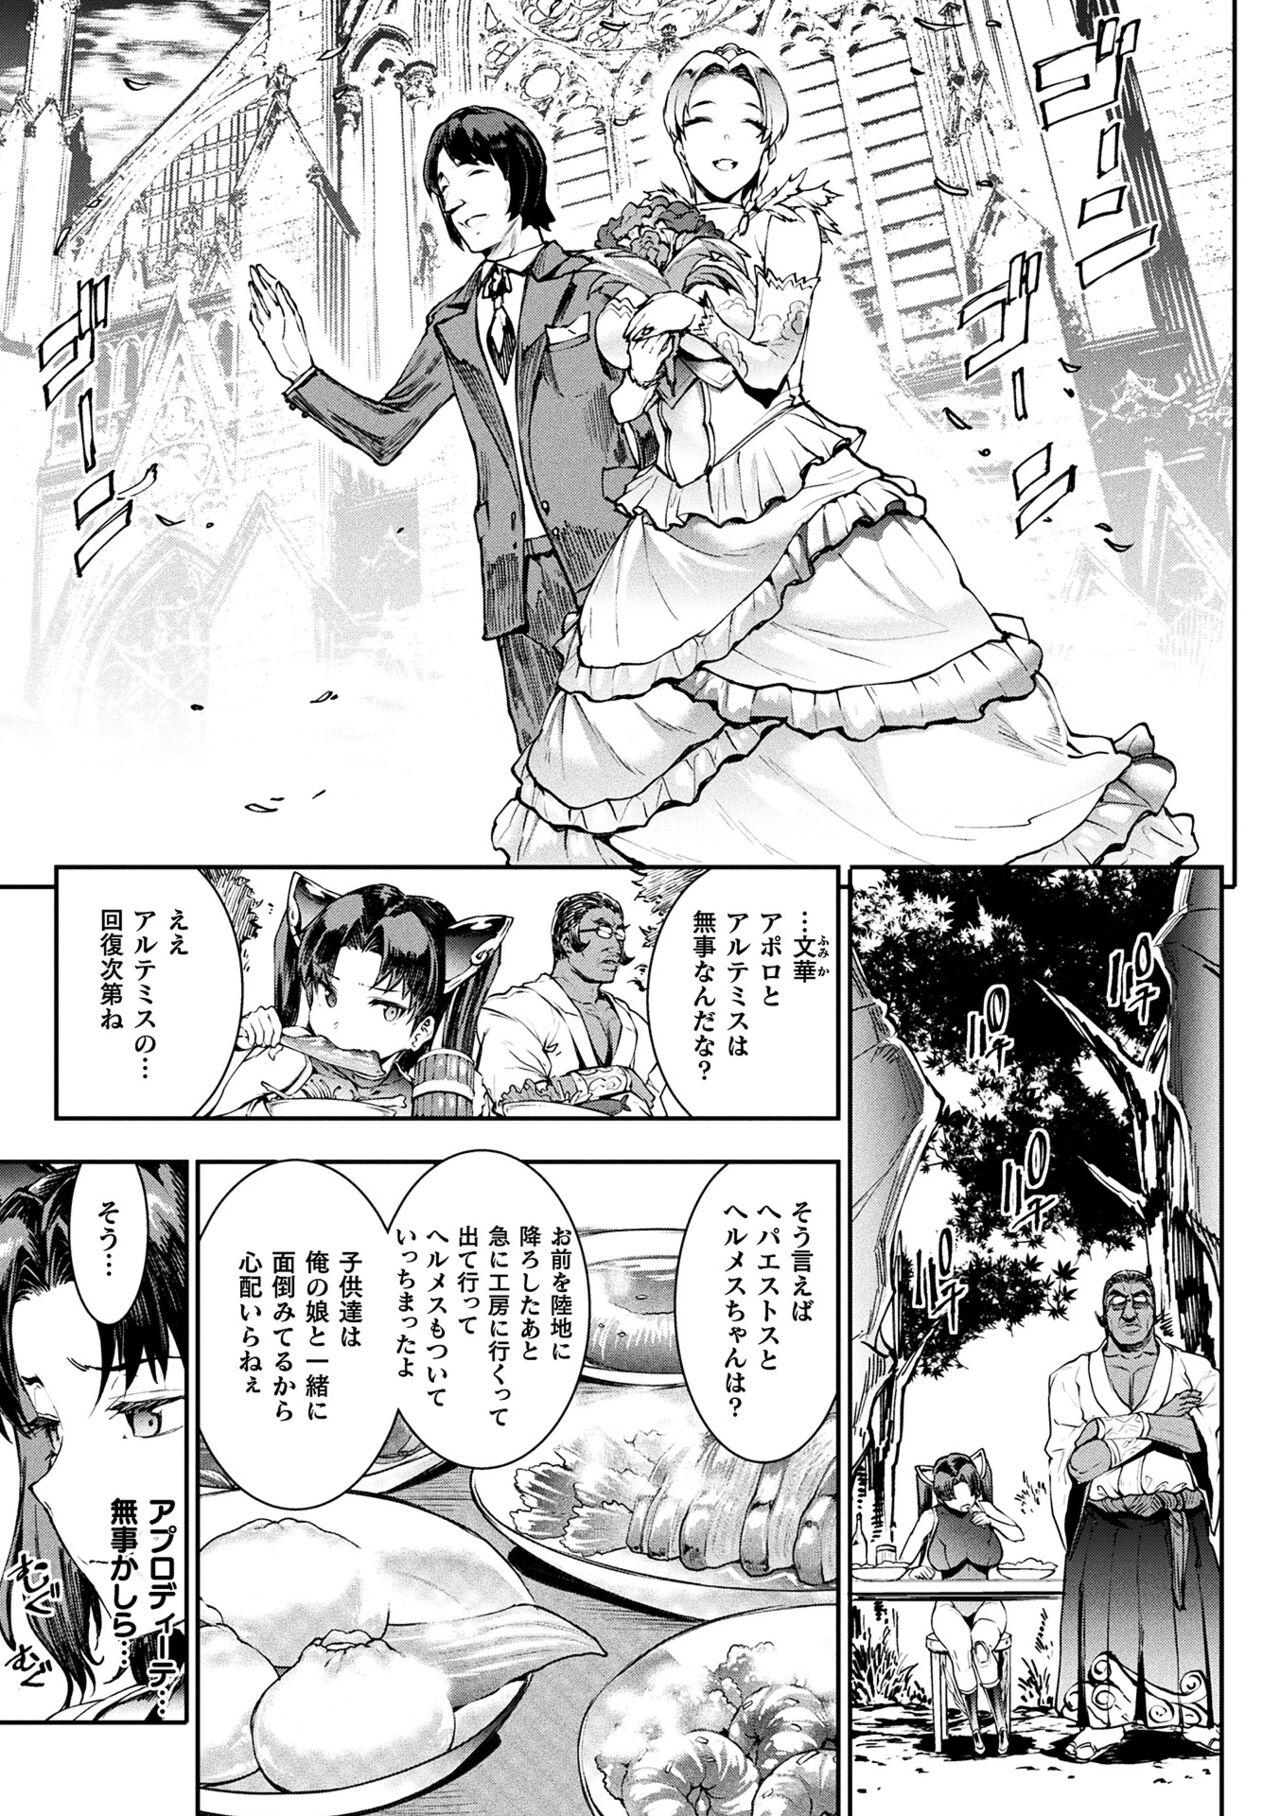 [Erect Sawaru] Raikou Shinki Igis Magia III -PANDRA saga 3rd ignition- 4 [Digital] 18